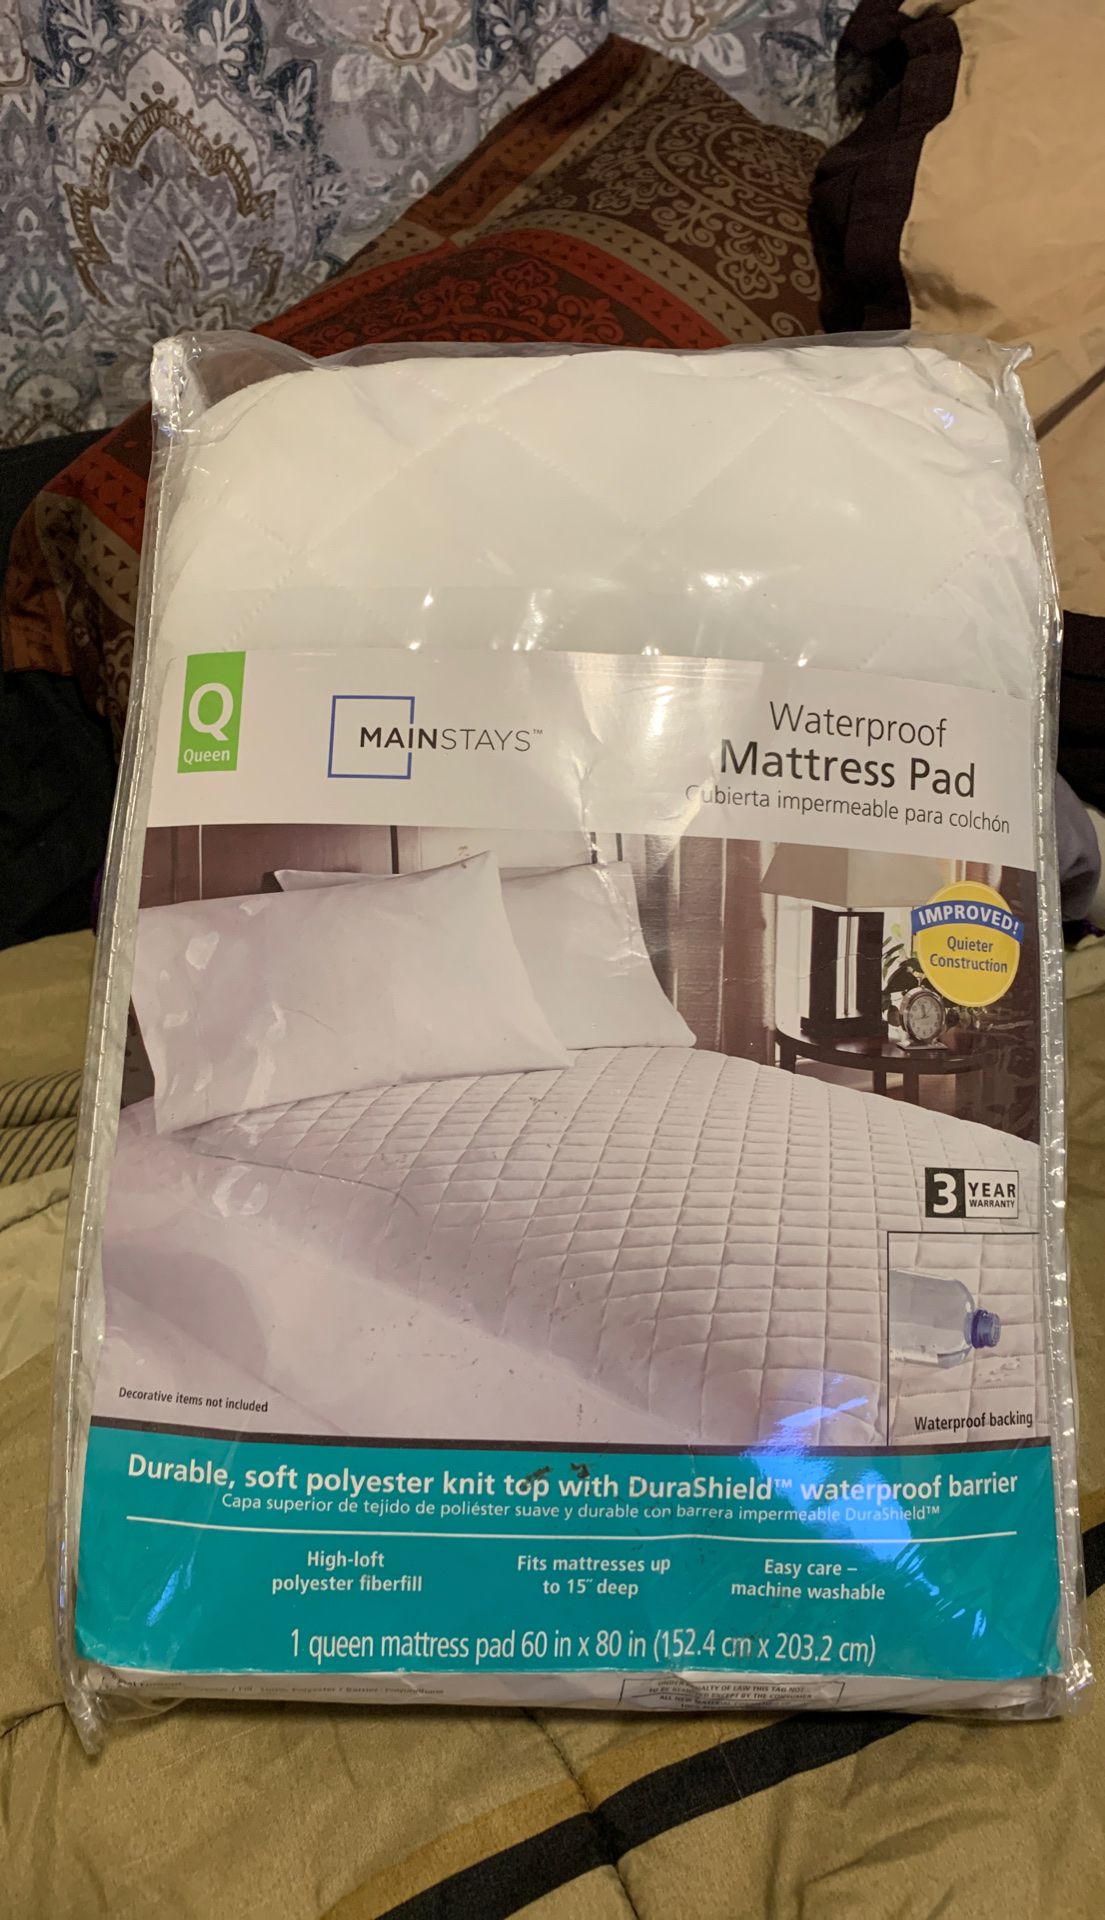 Waterproof Mattress Pad - Queen Size - Still in package *brandnew*